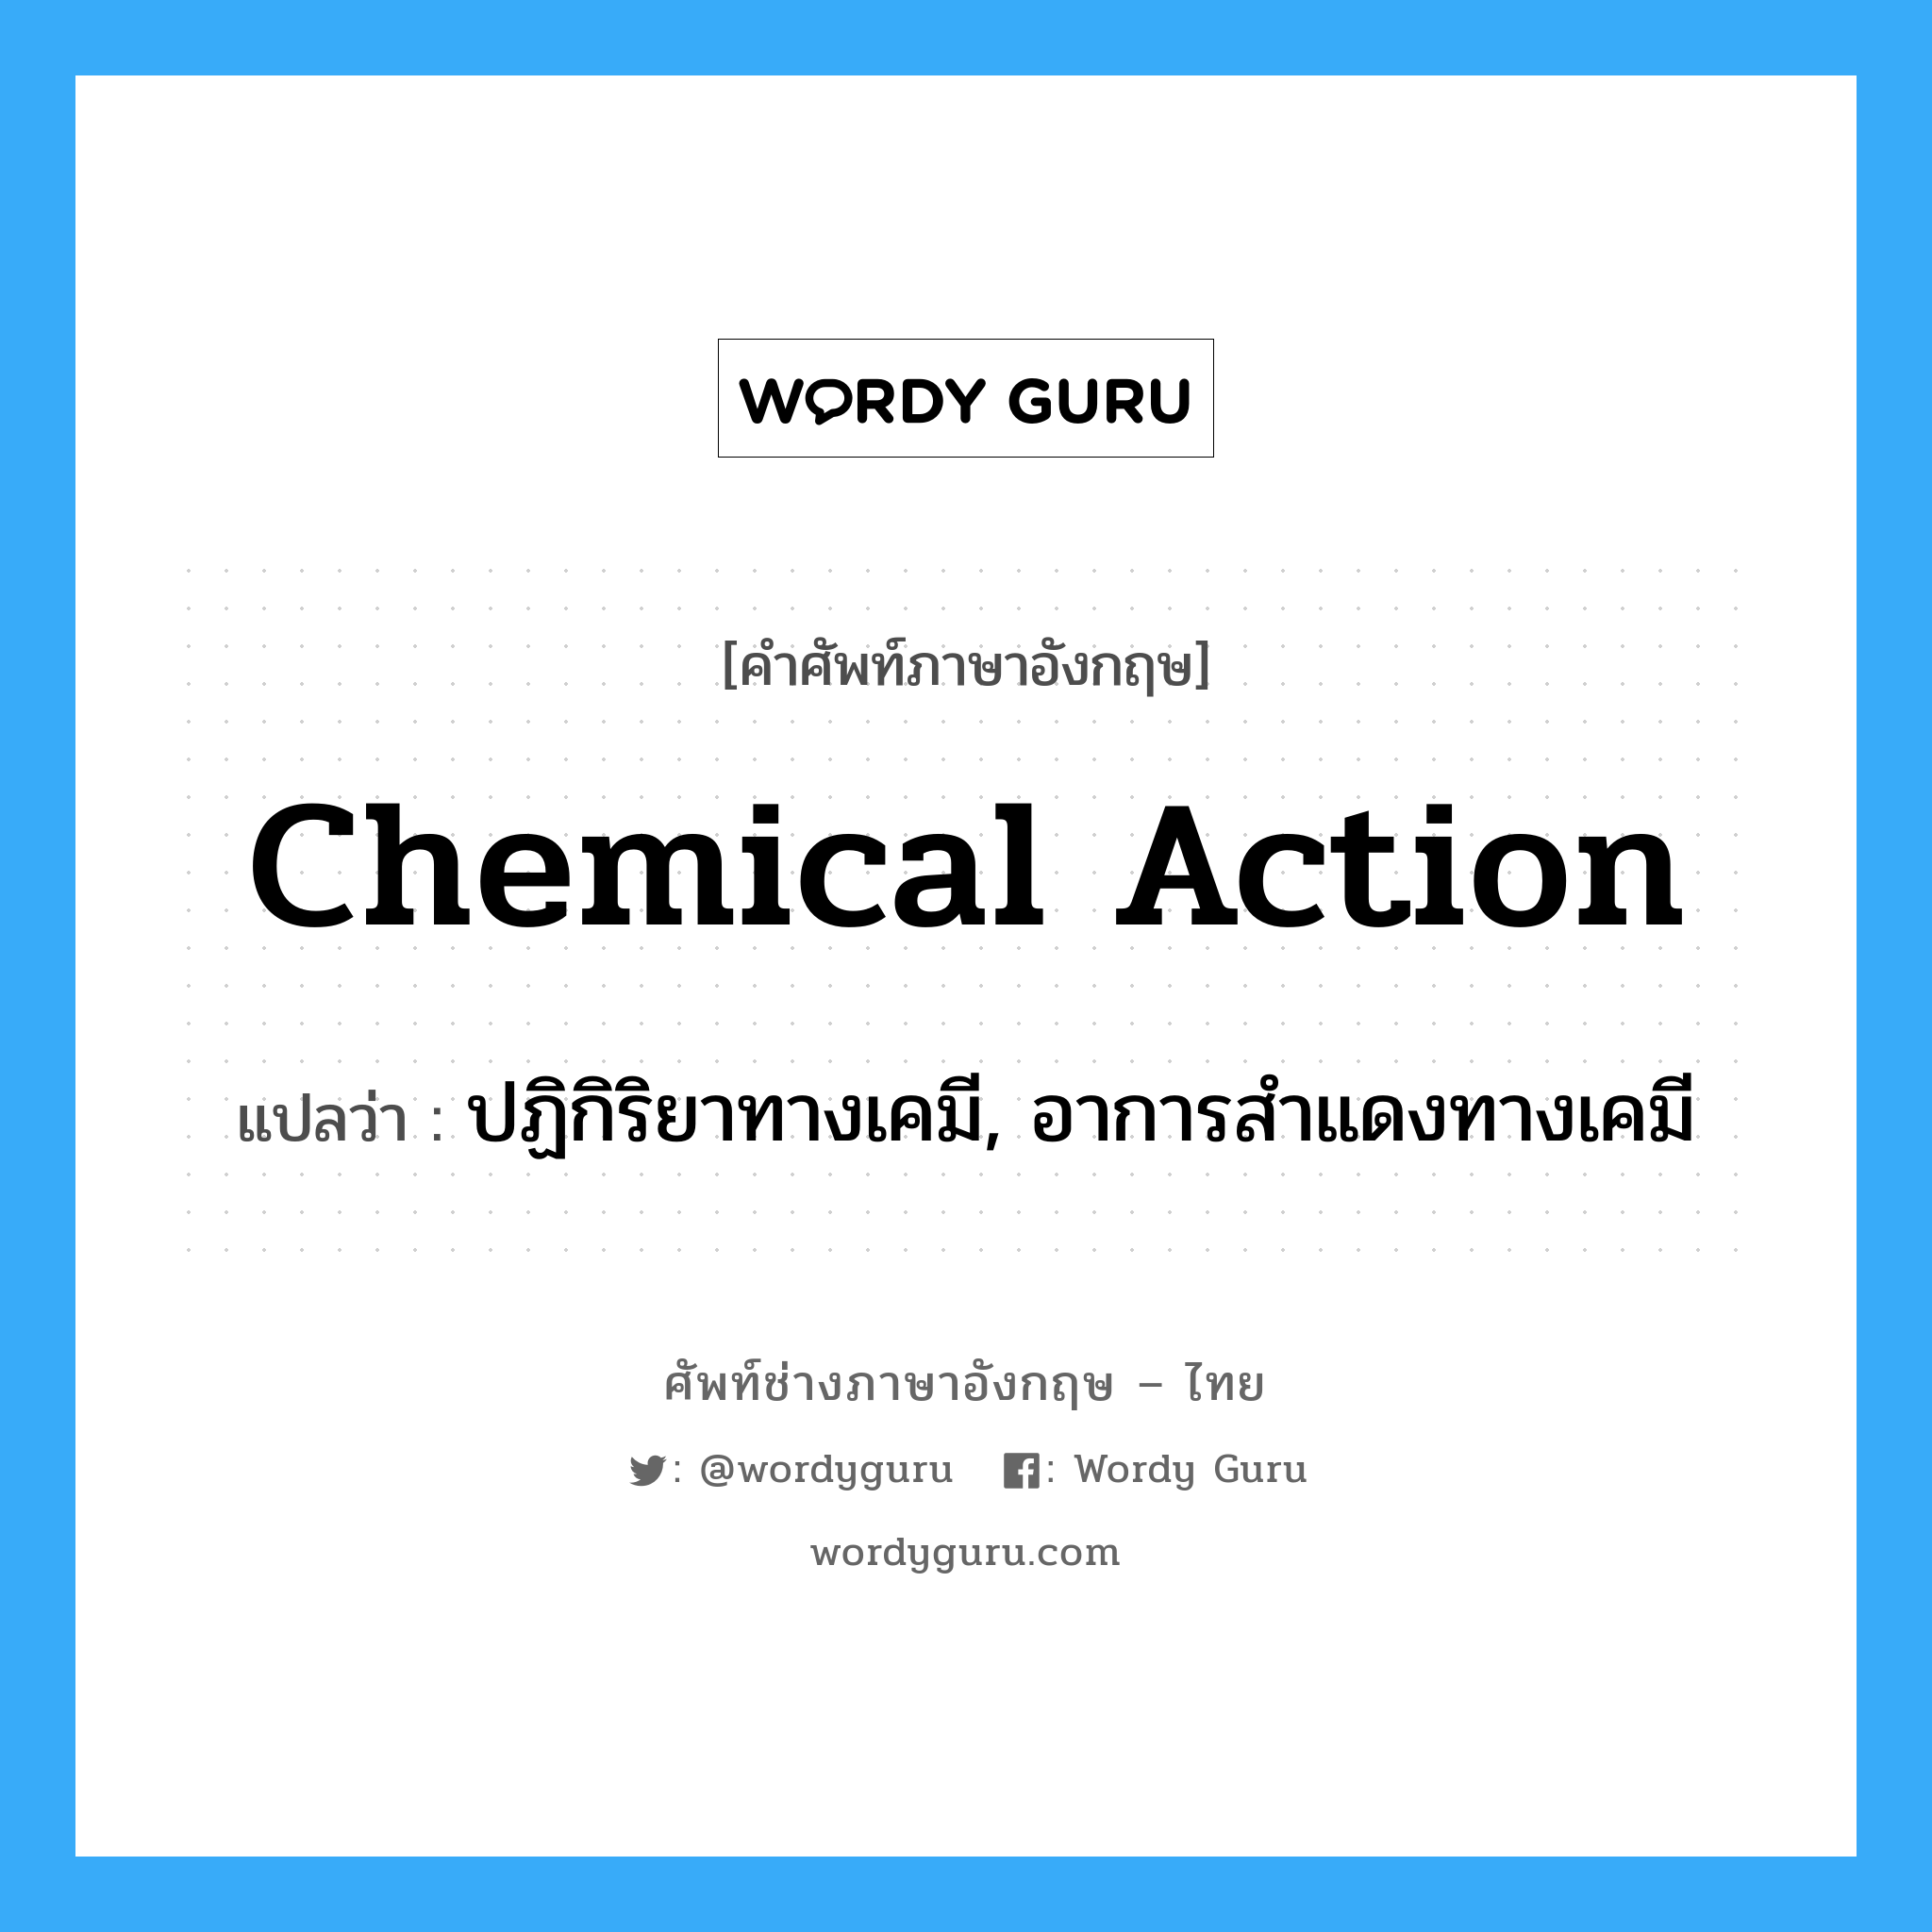 chemical action แปลว่า?, คำศัพท์ช่างภาษาอังกฤษ - ไทย chemical action คำศัพท์ภาษาอังกฤษ chemical action แปลว่า ปฏิกิริยาทางเคมี, อาการสำแดงทางเคมี